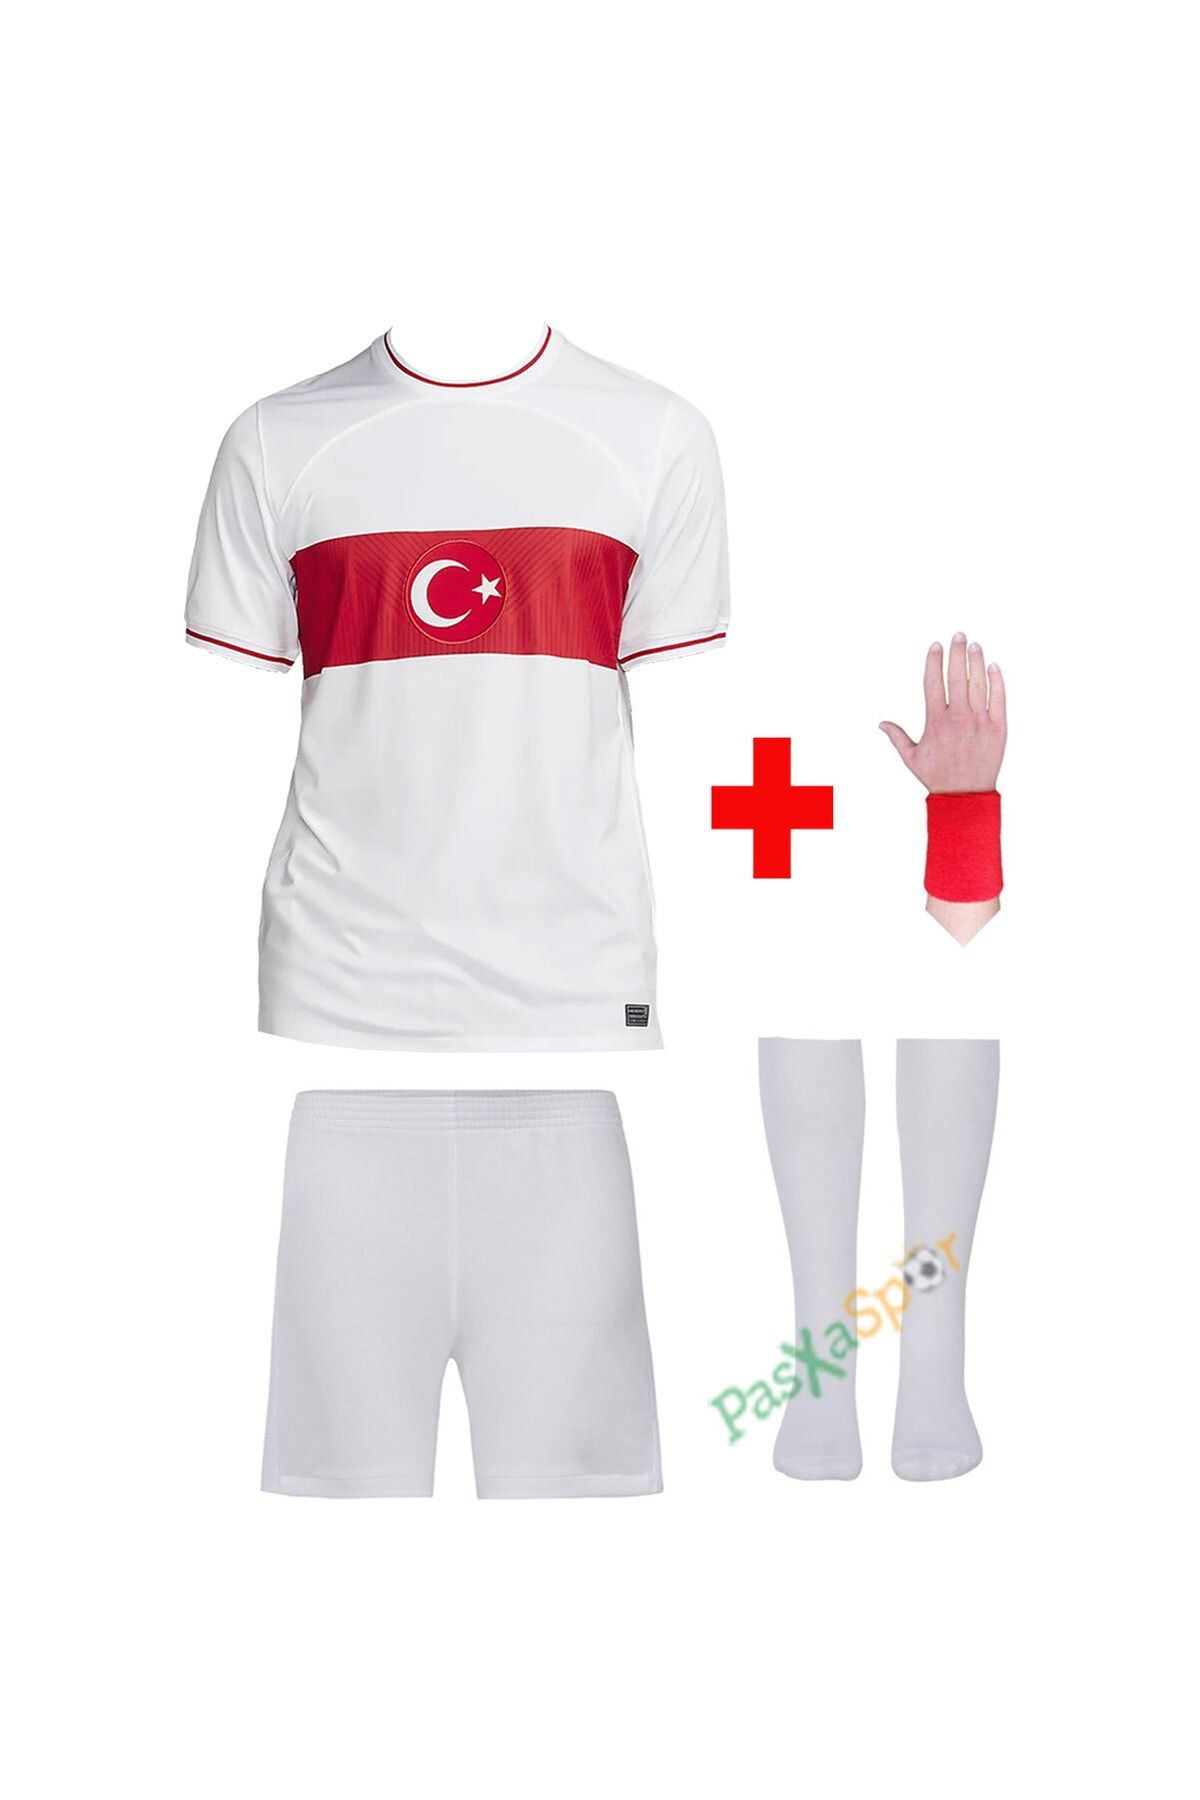 Pasxaspor Yeni Sezon Türkiye Beyaz Çocuk Forması Şort Çorap Bileklik Hediyeli